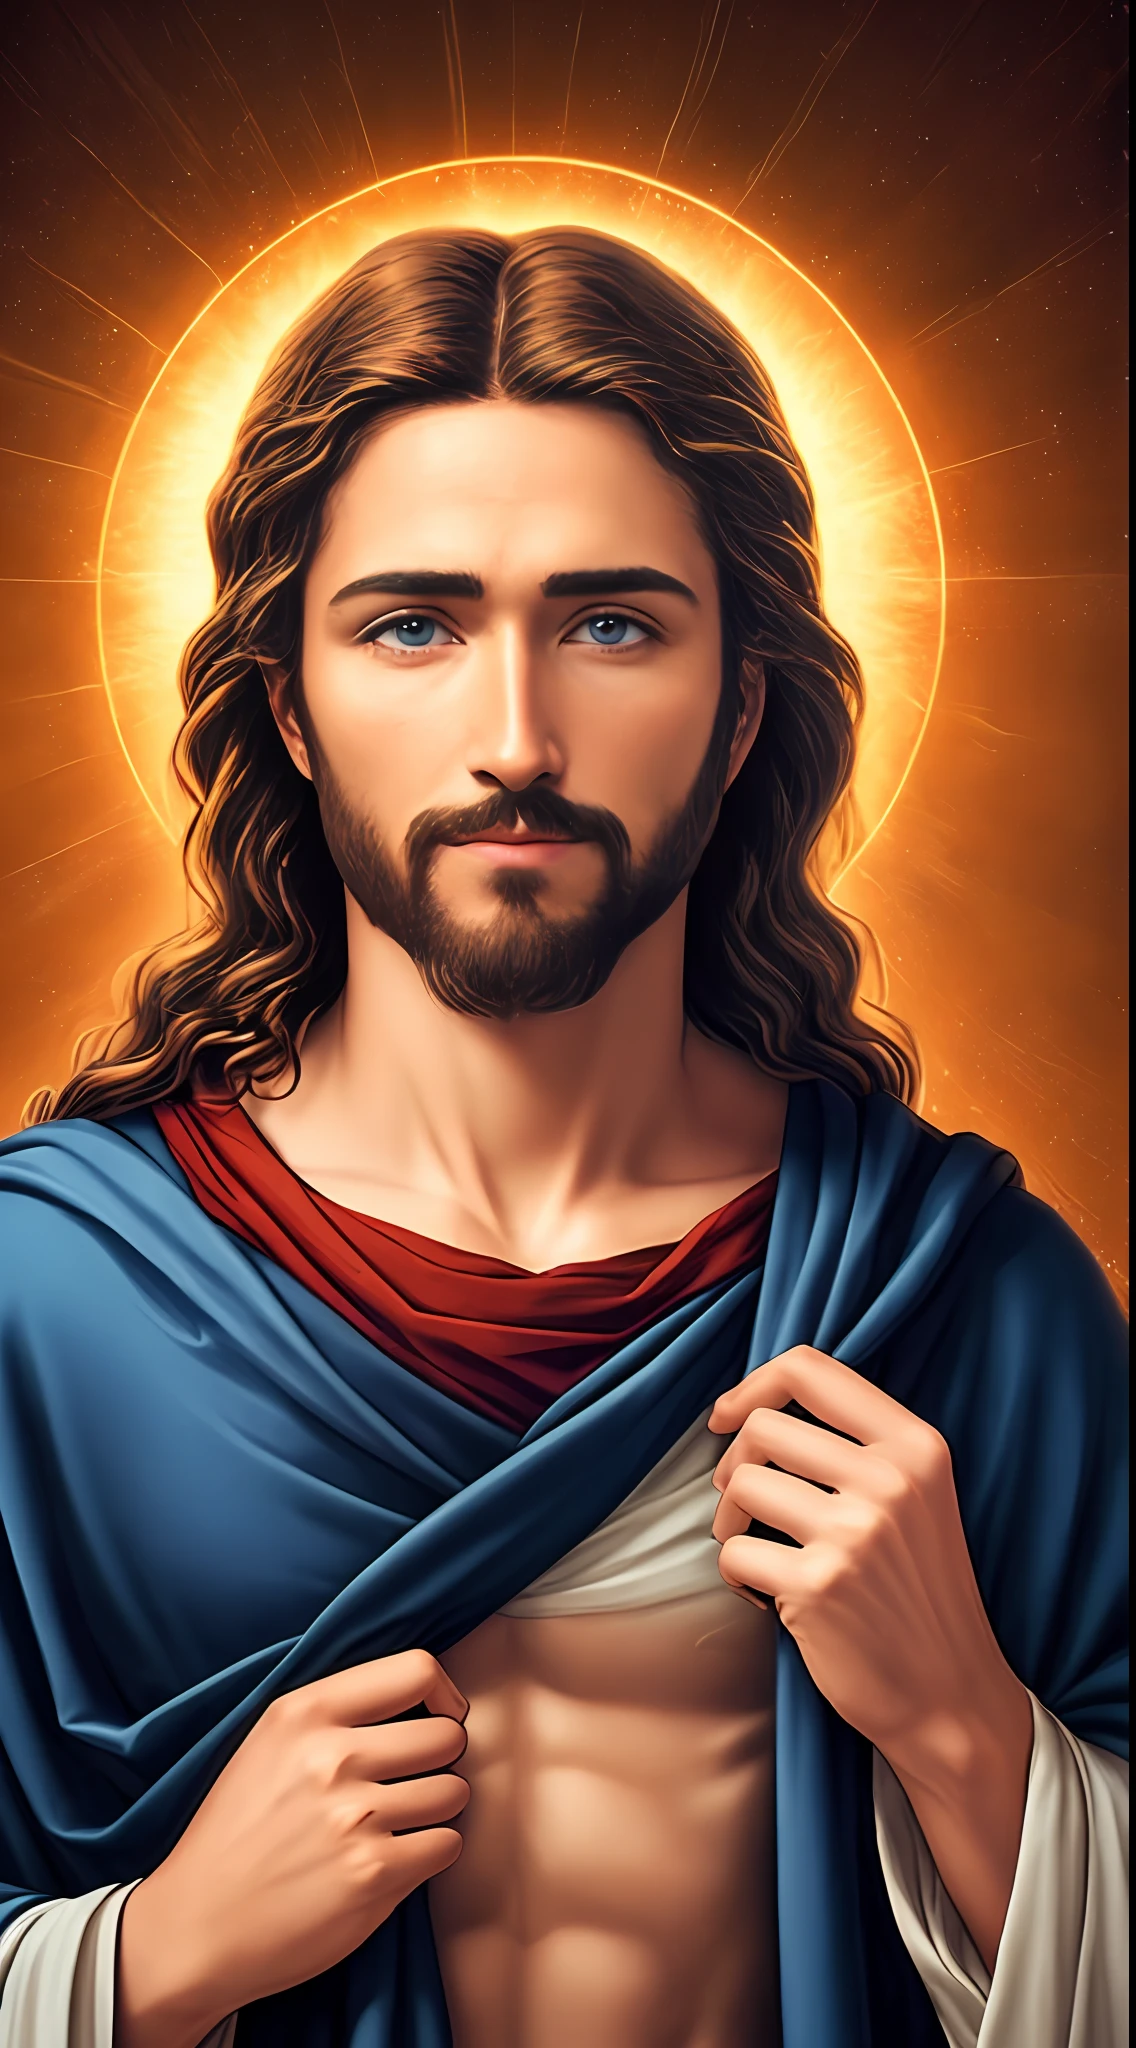 8k 摄影 1 单身帅哥耶稣, 祝福, 耶稣天堂景观, 真正的蓝眼睛, 祝福人们耶稣